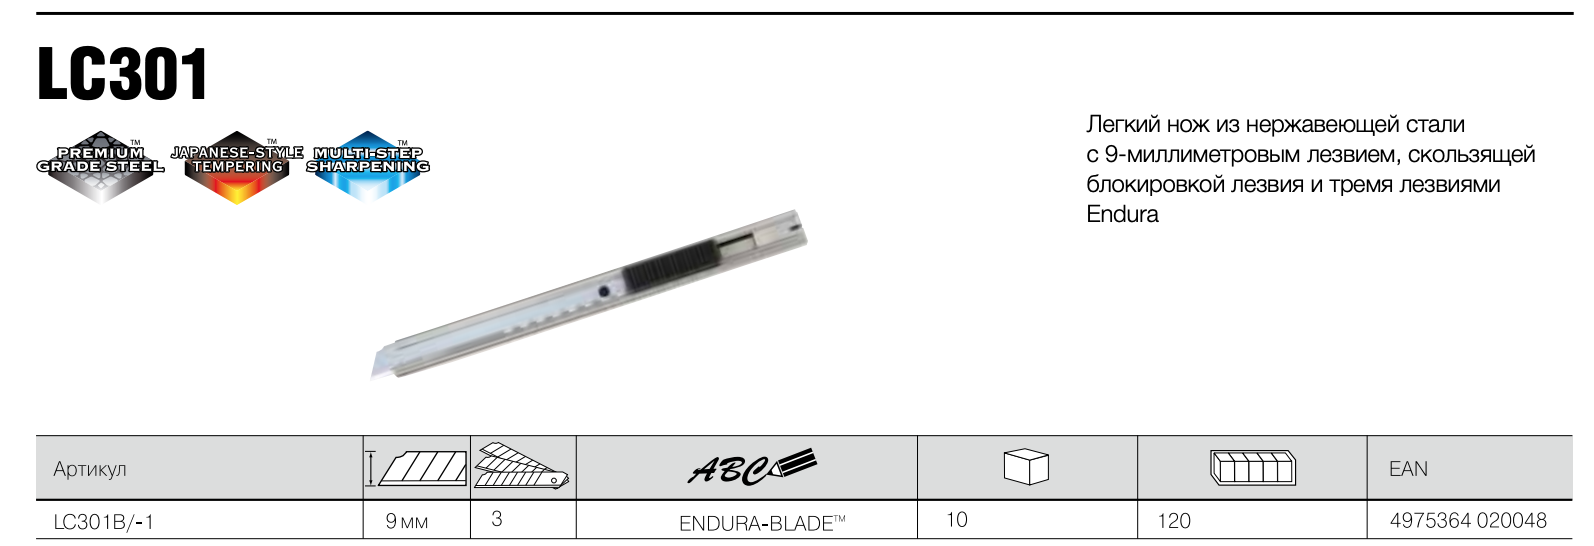 Нож легкий из нержавеющей стали TAJIMA LC301 9 мм (3 лезвия, автофиксация) LC301